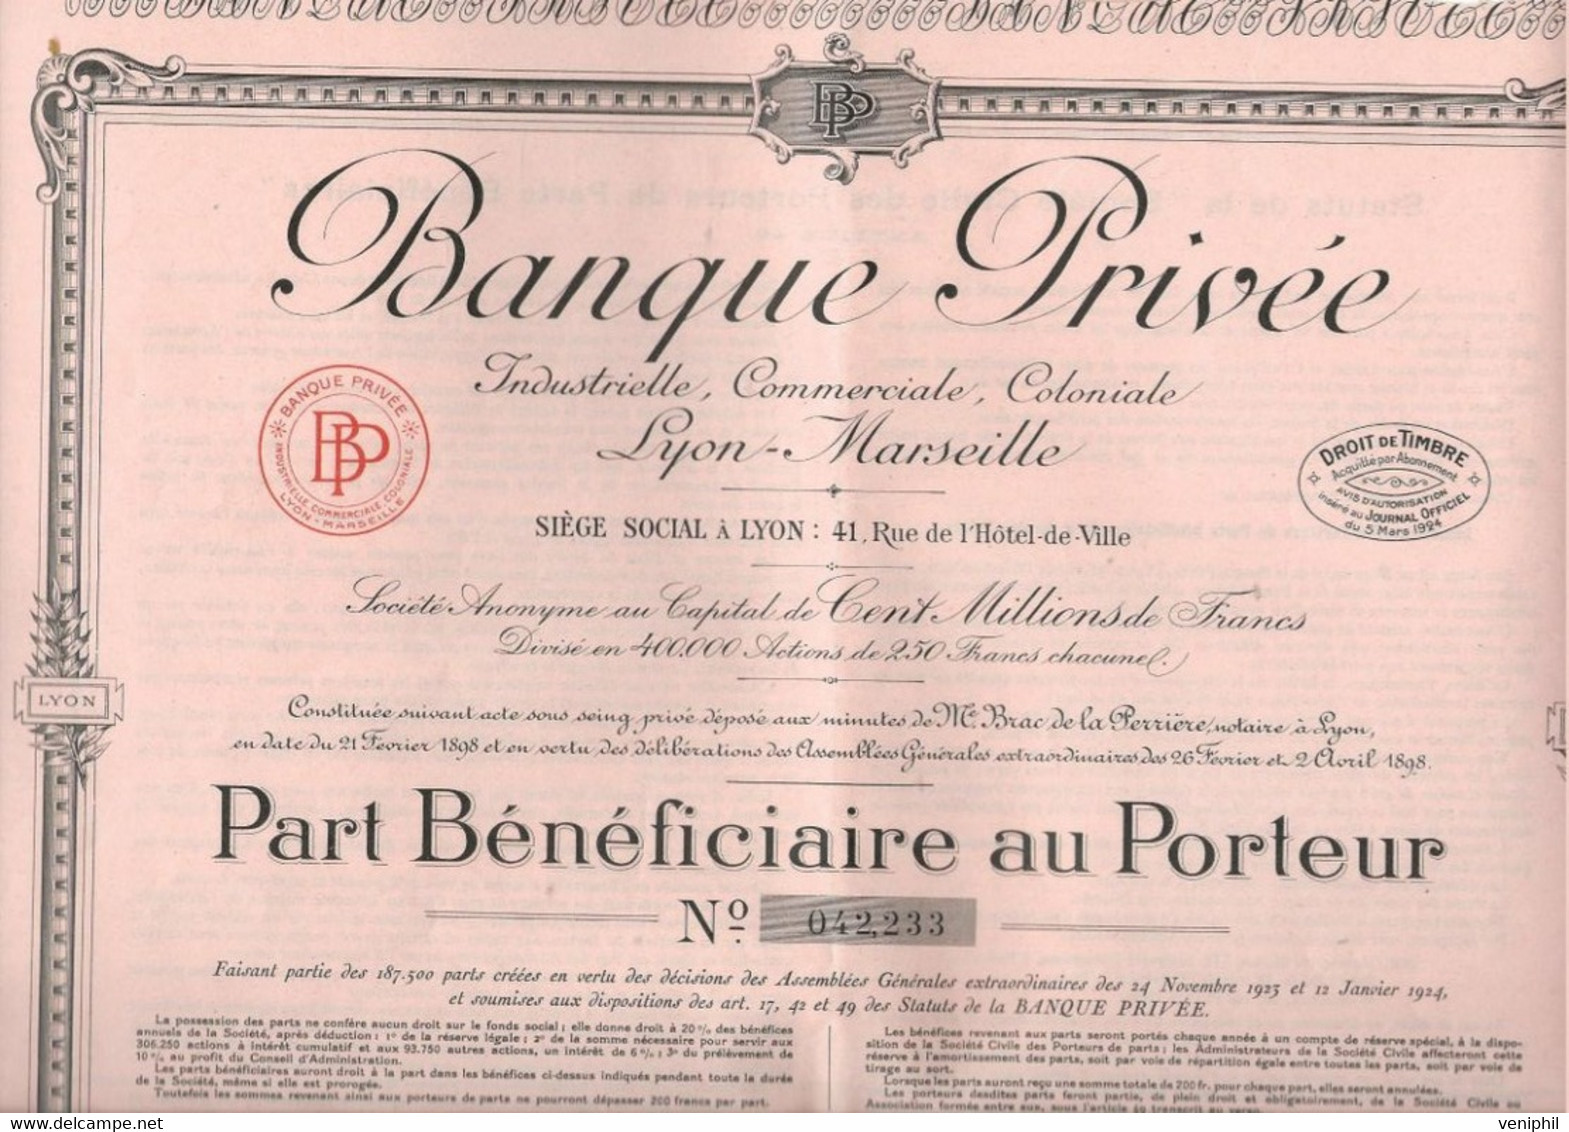 BANQUE PRIVEE INDUSTRIELLE, COMMERCIALE,COLONIALE -LYON -MARSEILLE- PART BENEFICIAIRE  ANNEE 1924 - Banco & Caja De Ahorros